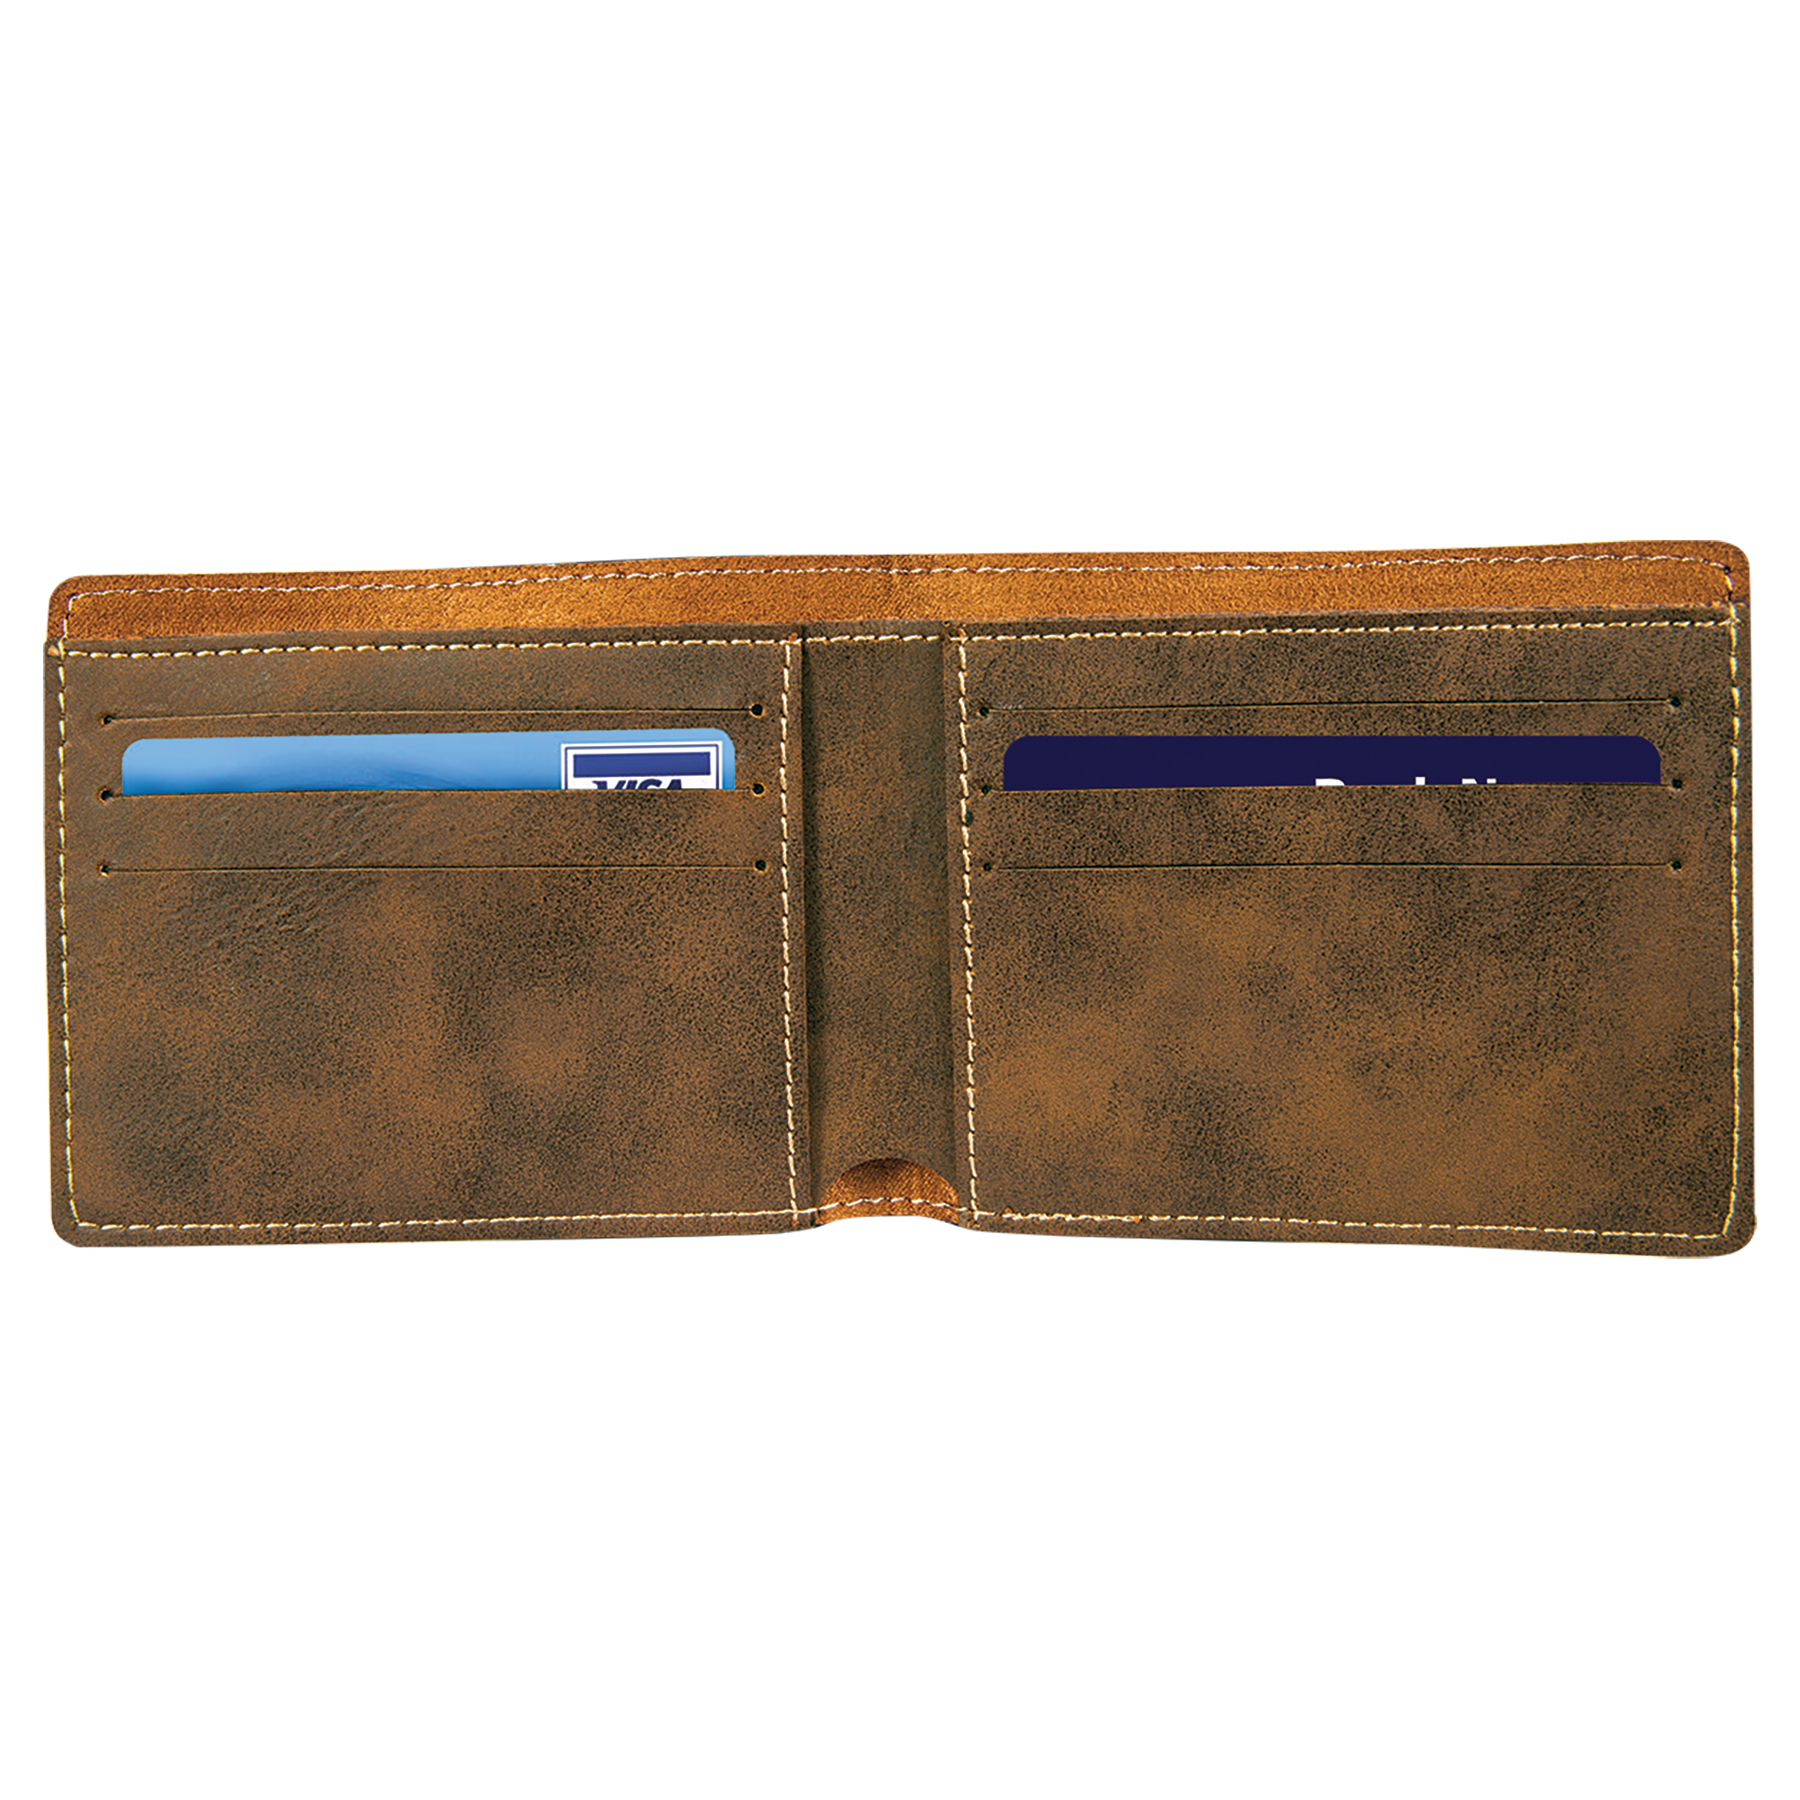 4 1/2" x 3 1/2" Leatherette Bifold Wallet